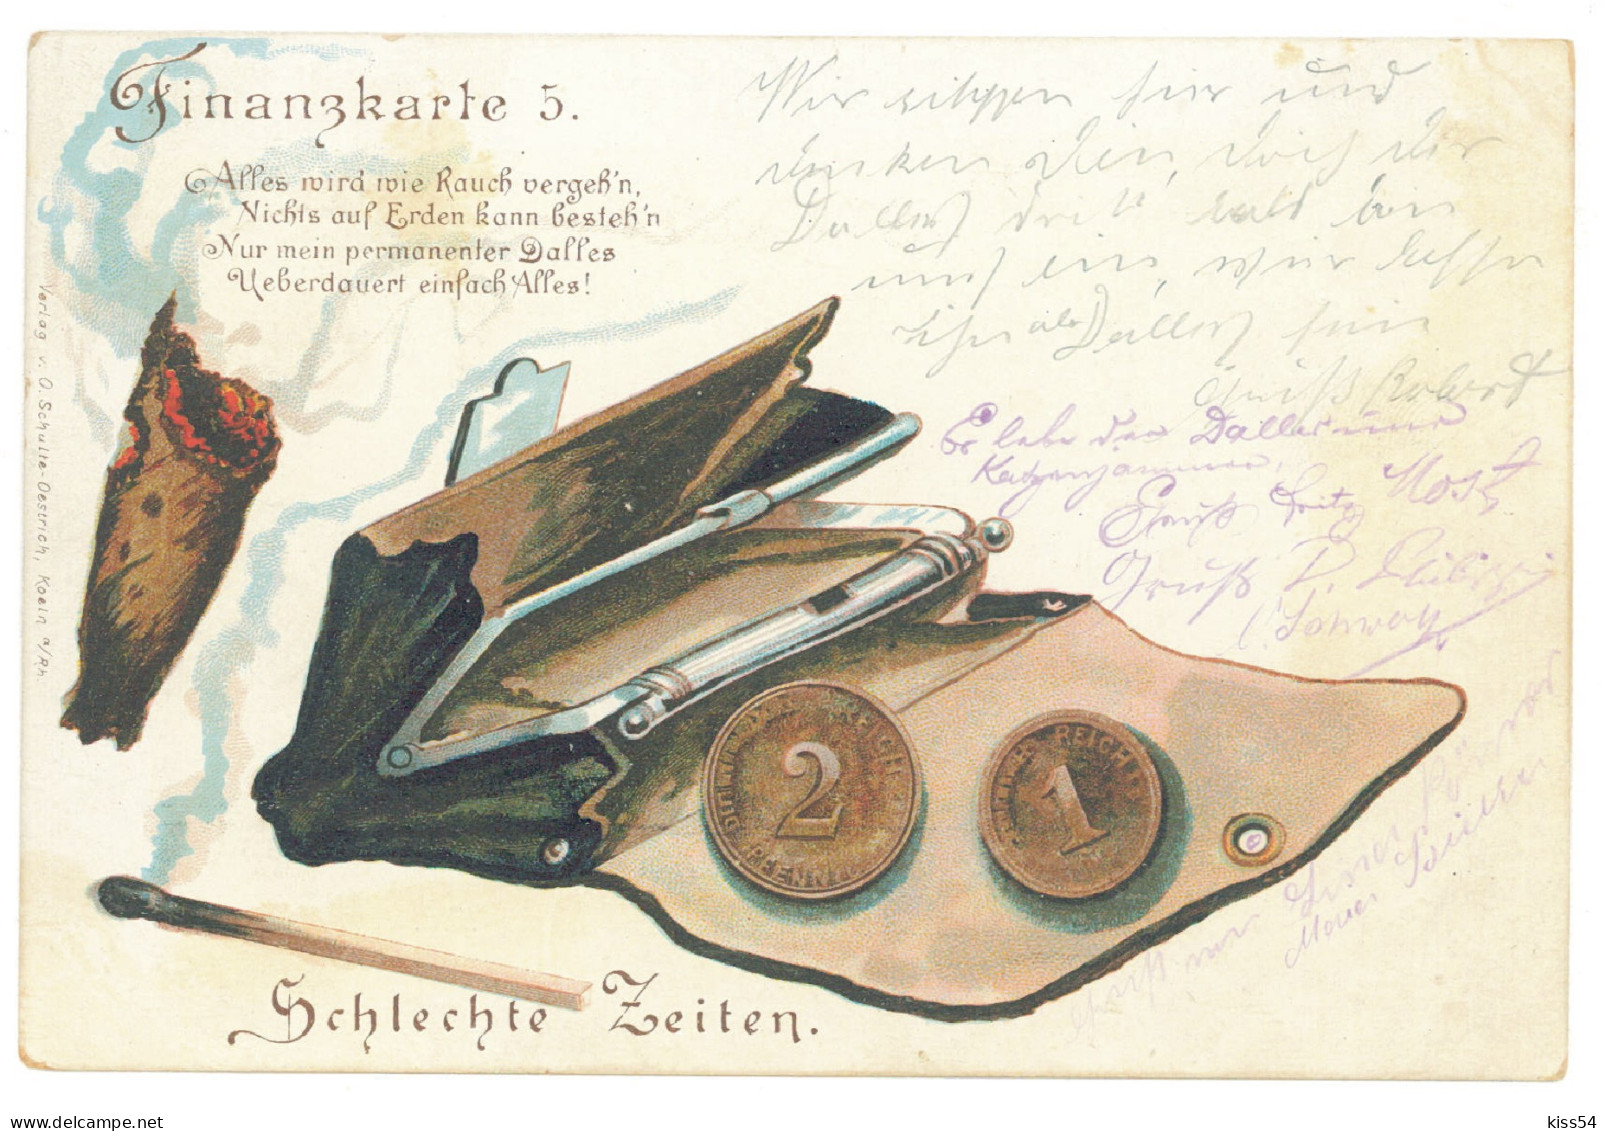 GER 22 - 4399 COINS, Germany, Litho - Old Postcard - Used - 1898 - Munten (afbeeldingen)